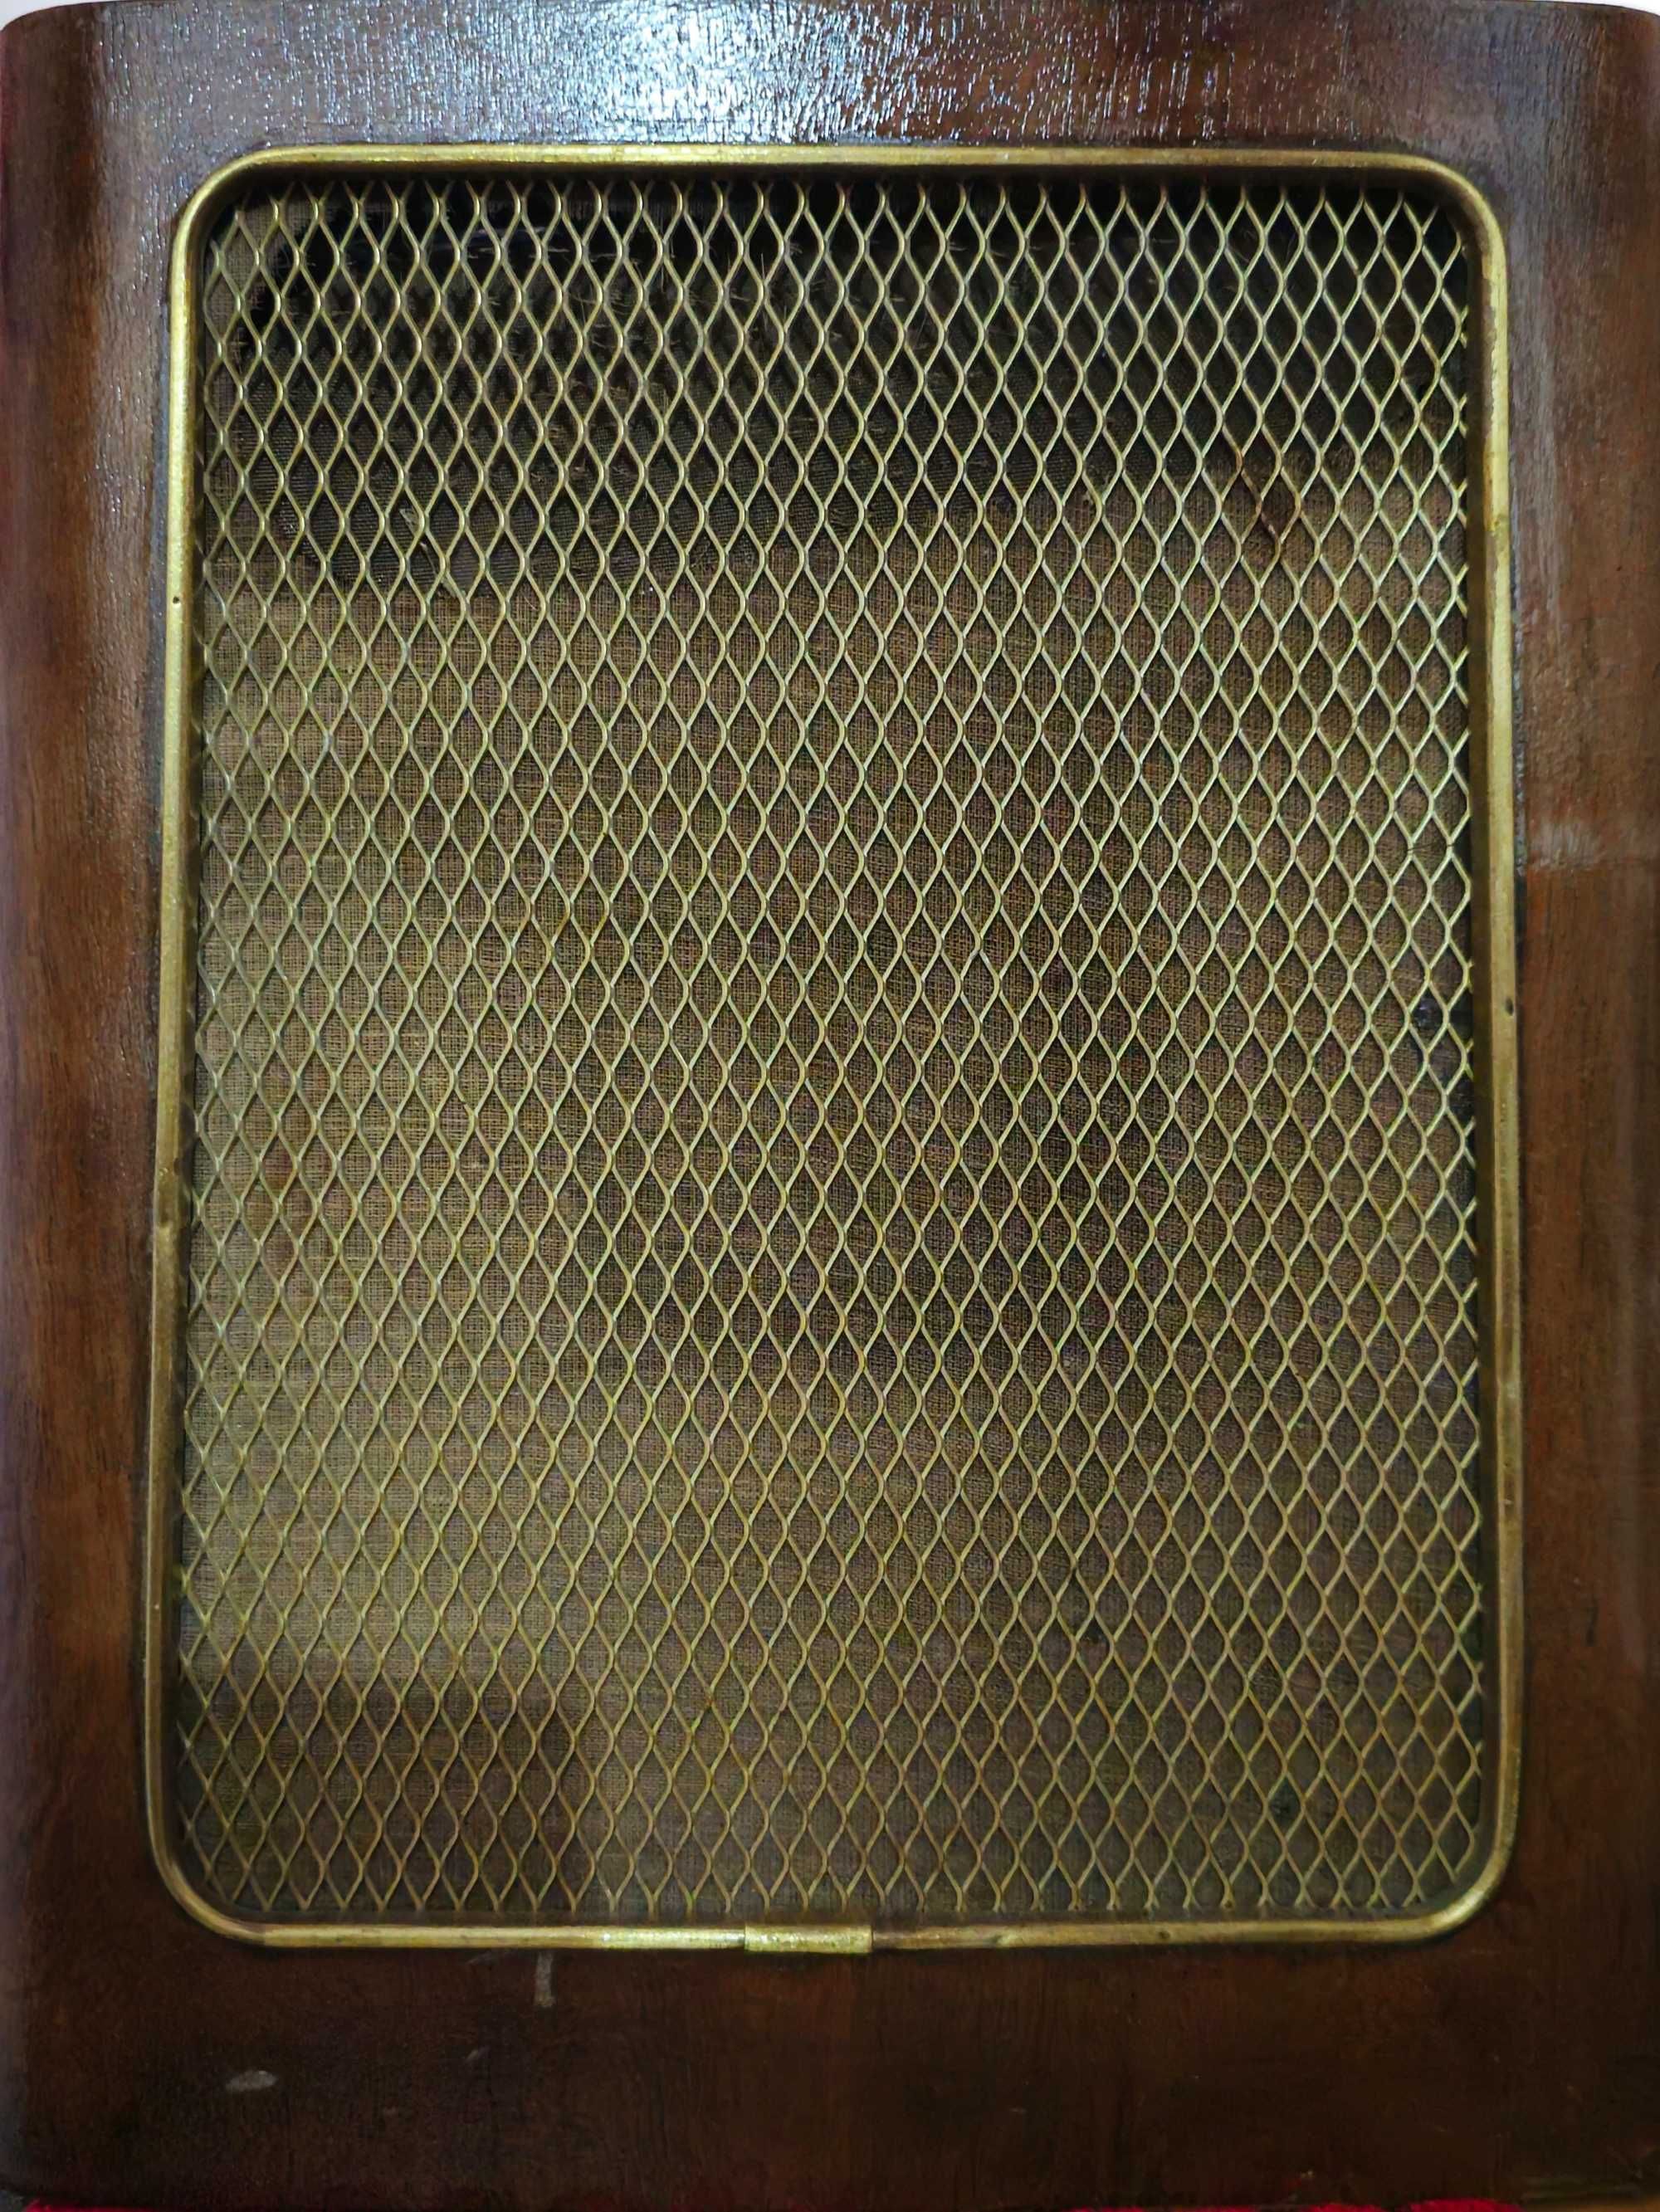 RADIO Grundig 3090/56 DE 1956 Rádio a válvulas